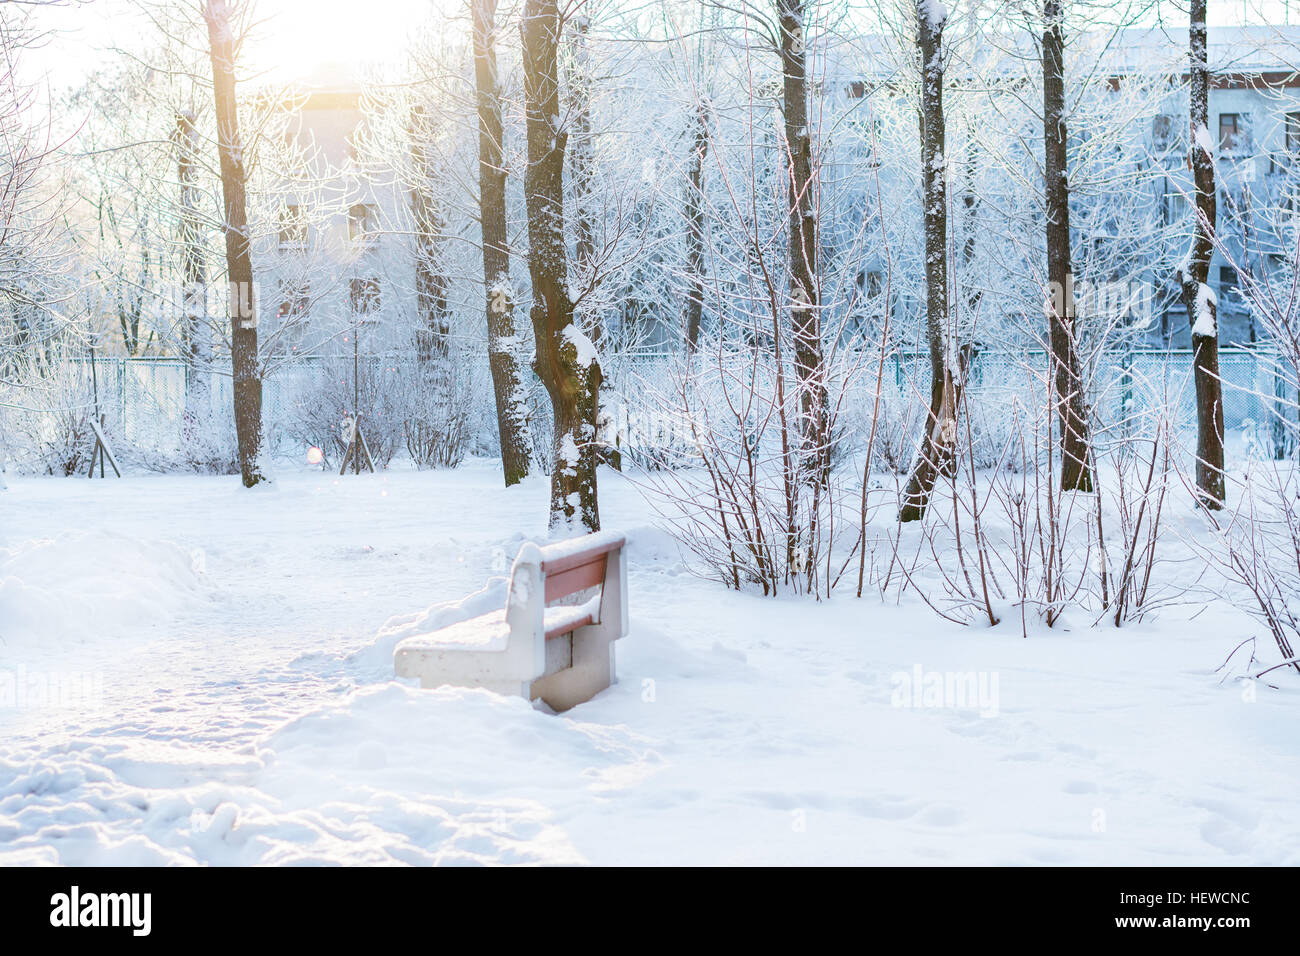 Sonniger Wintertag im Schnee Park. Fallende Schneeflocken Blendung in direktem Sonnenlicht, durch Schnee bedeckt Bäume. Selektiven Fokus auf Schneeflocken Stockfoto